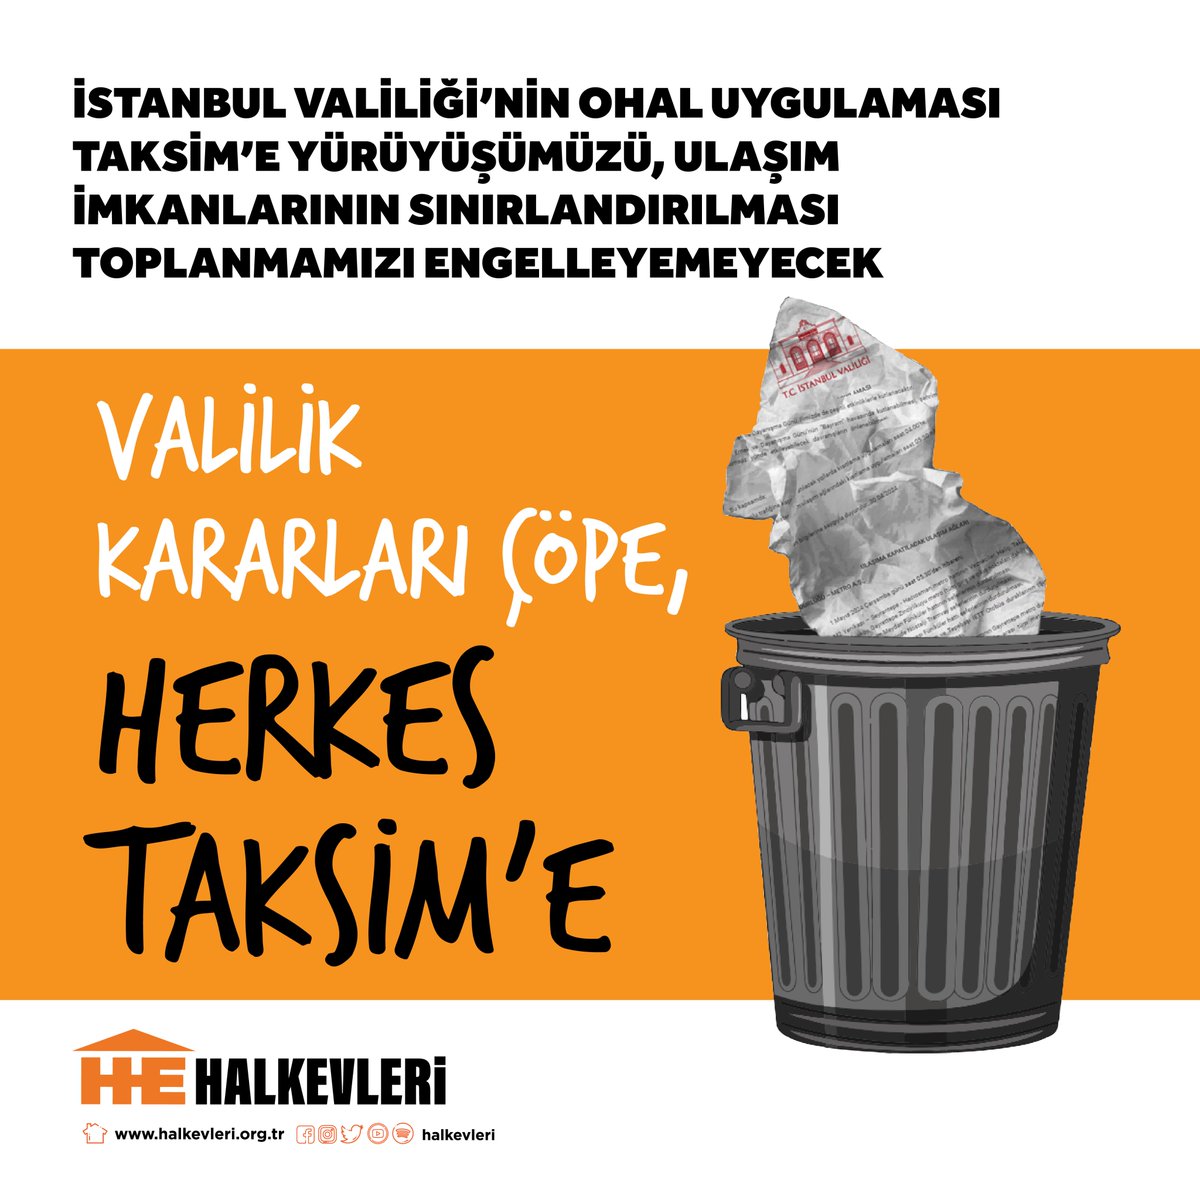 Valilik kararları çöpe, #HerkesTaksime

İstanbul Valiliği'nin 1 Mayıs'ı engellemek için ilan ettiği OHAL uygulaması Taksim'e yürüyüşümüzü, ulaşım imkanlarının sınırlandırılması toplanmamızı engelleyemeyecek.